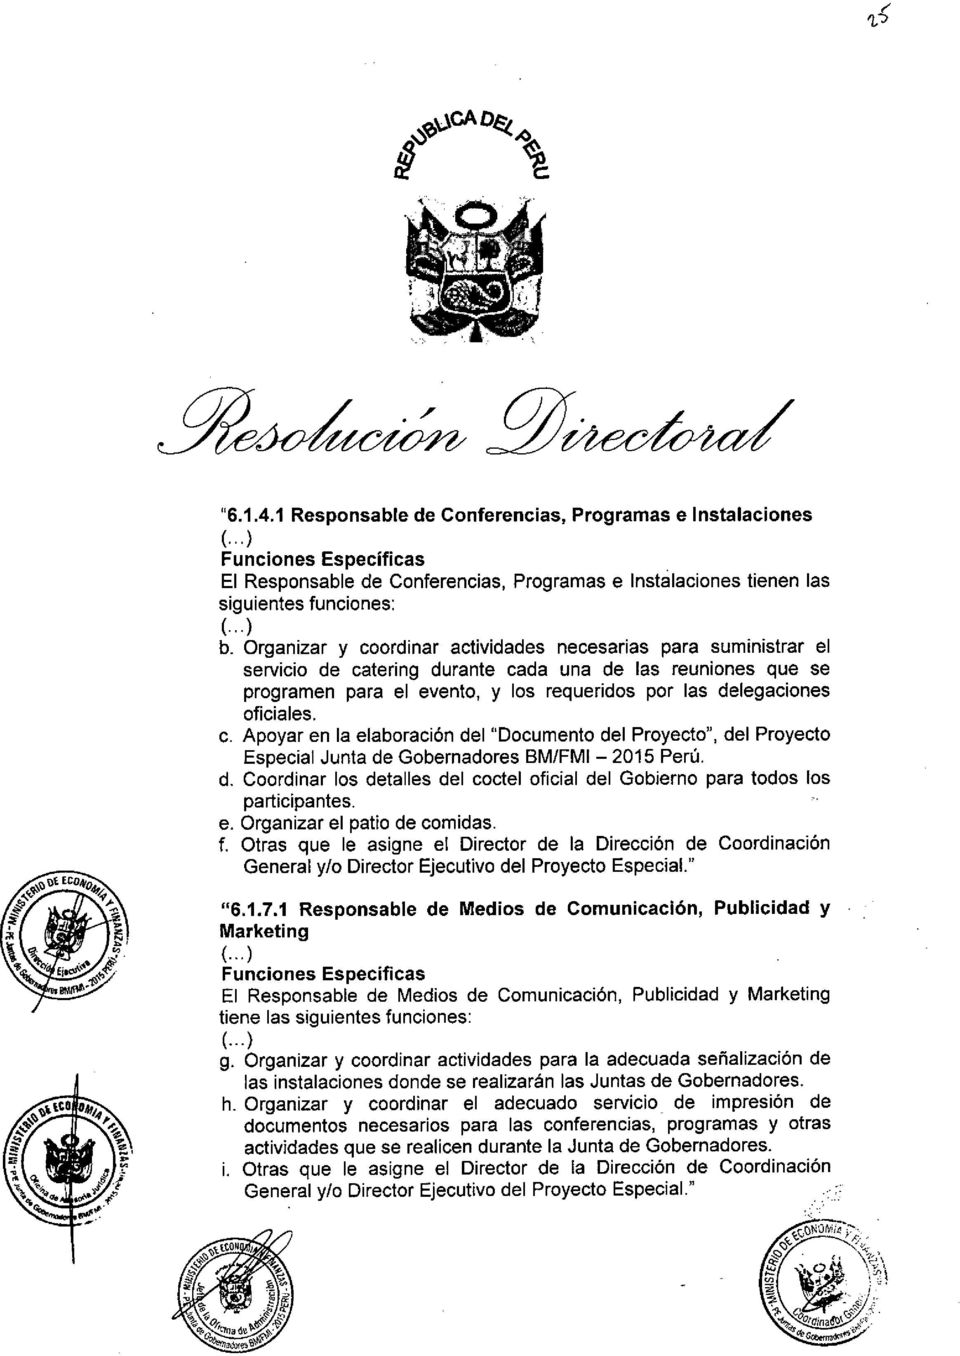 oficiales. c. Apoyar en la elaboración del "Documento del Proyecto", del Proyecto Especial Junta de Gobernadores BM/FMI - 2015 Perú. d. Coordinar los detalles del coctel oficial del Gobierno para todos los participantes.